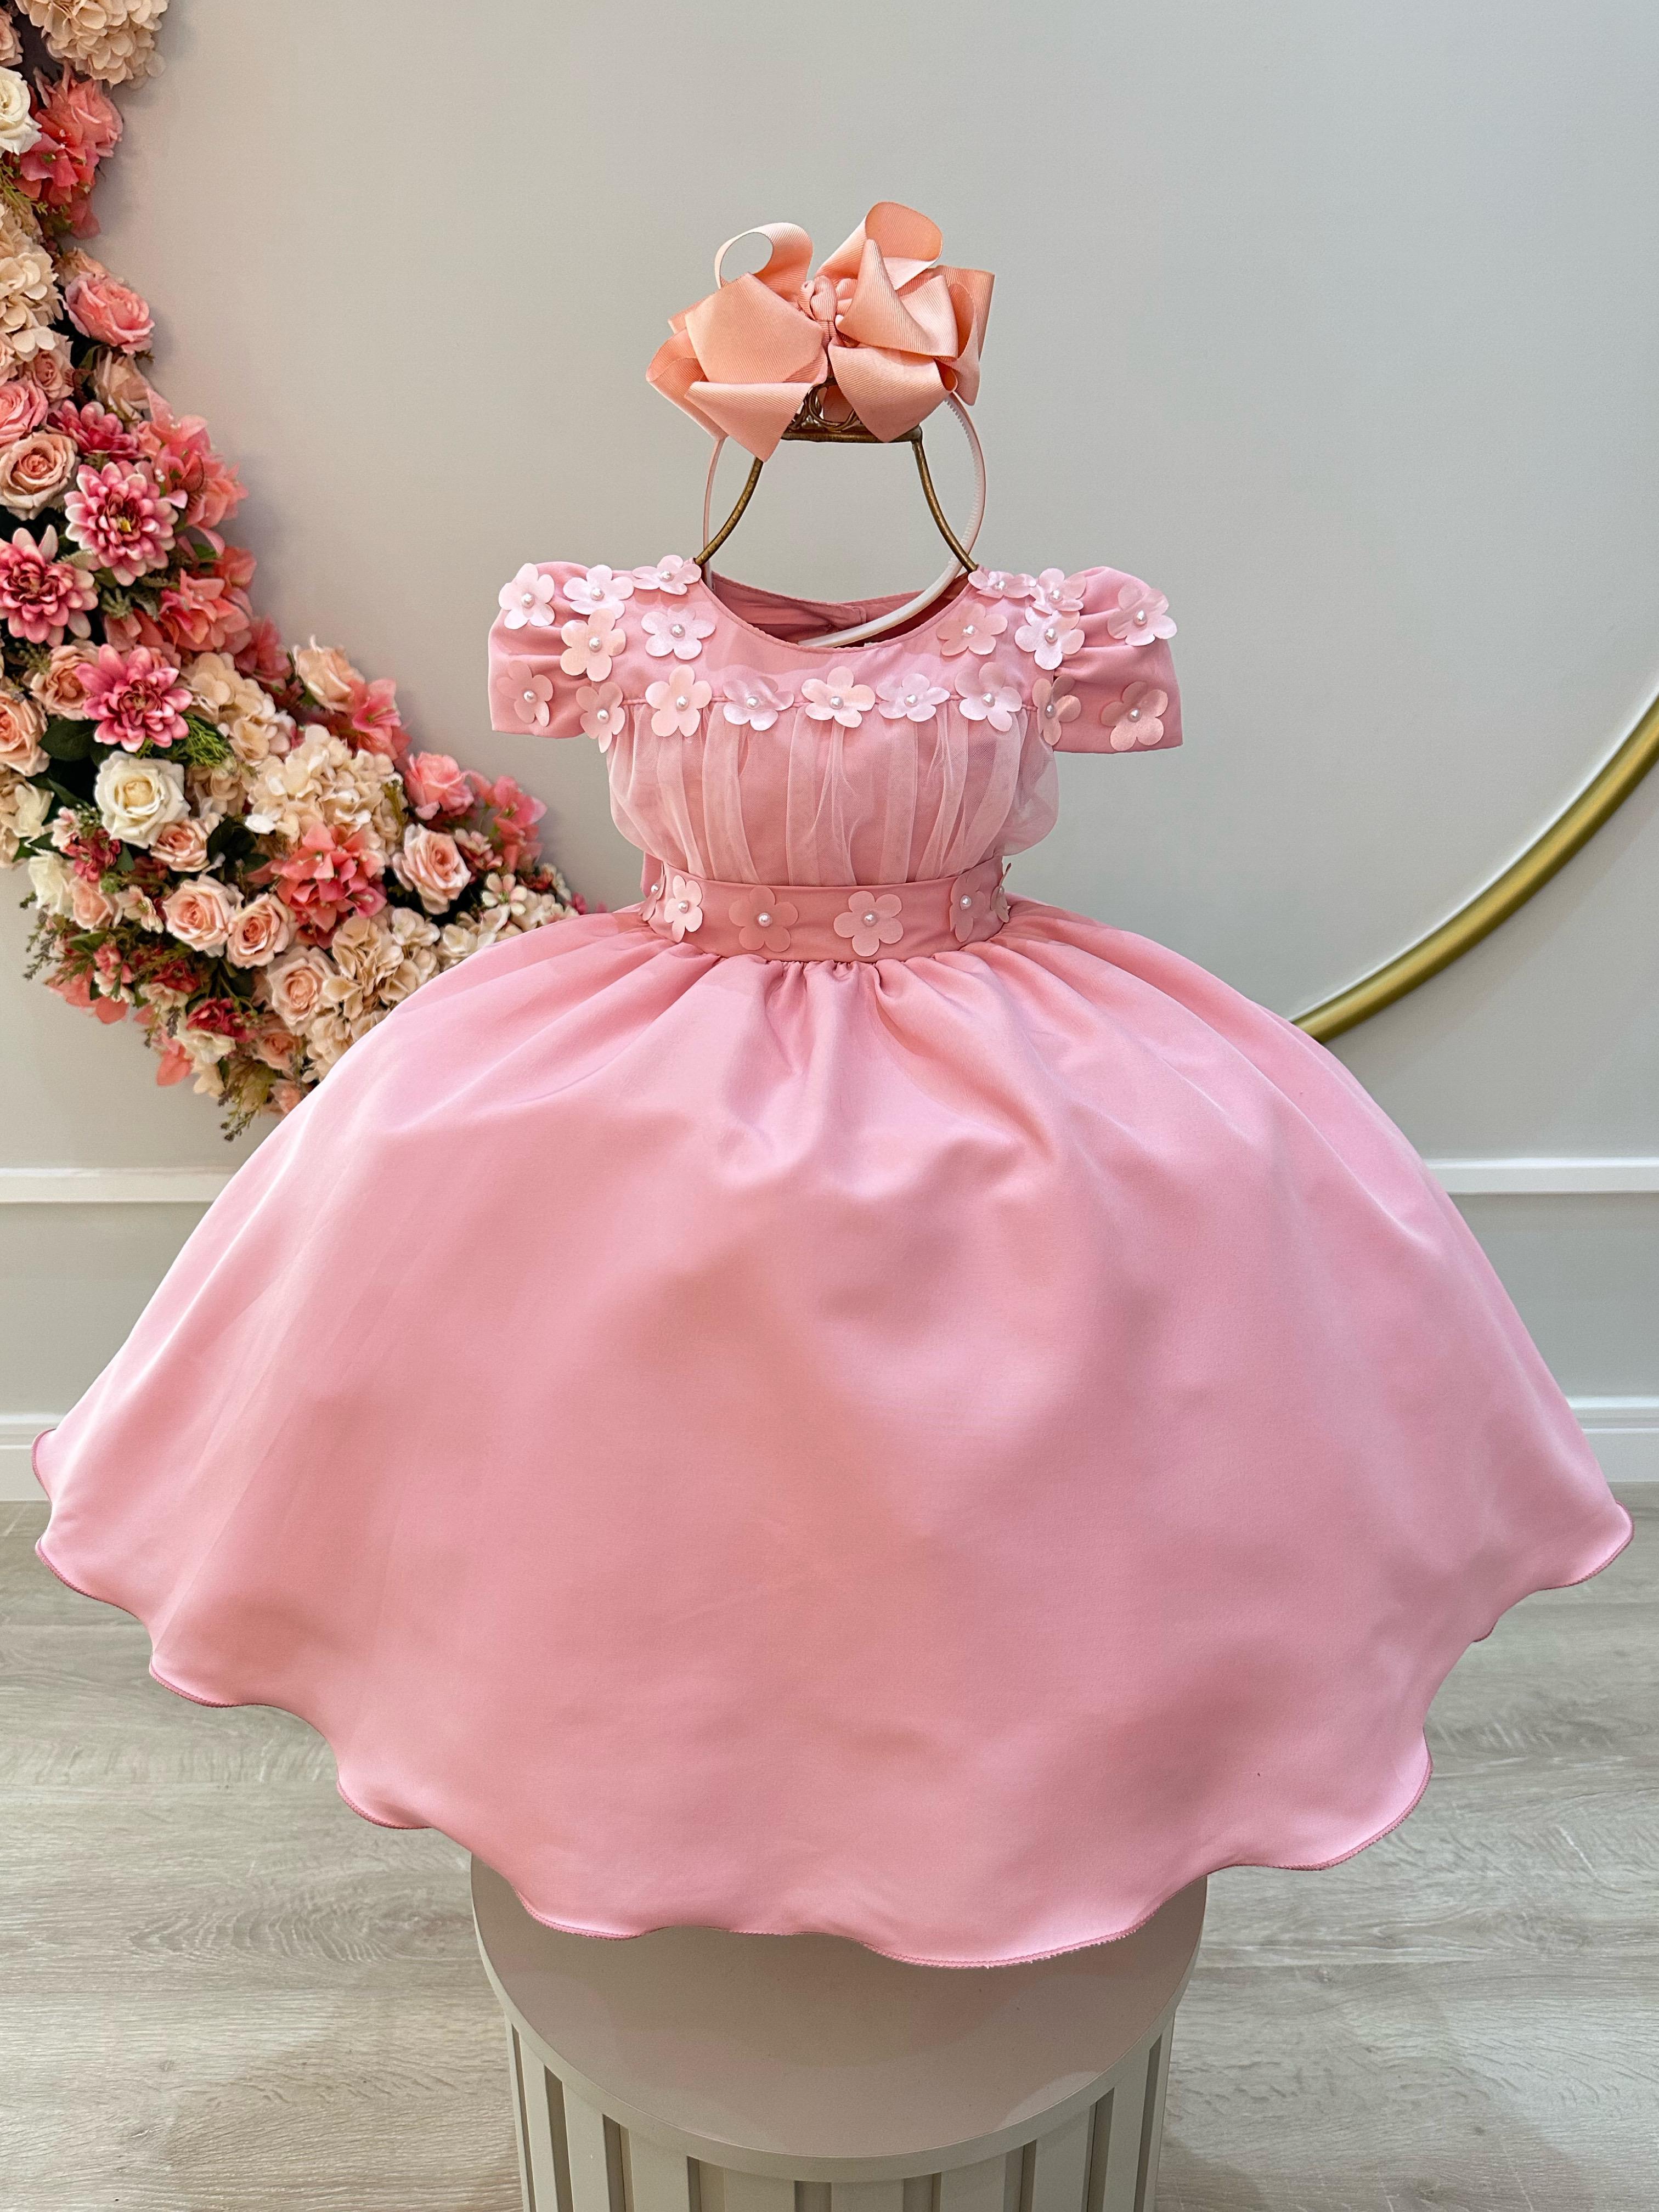 Vestido Infantil Rose C/ Busto Tule e Aplique de Flores